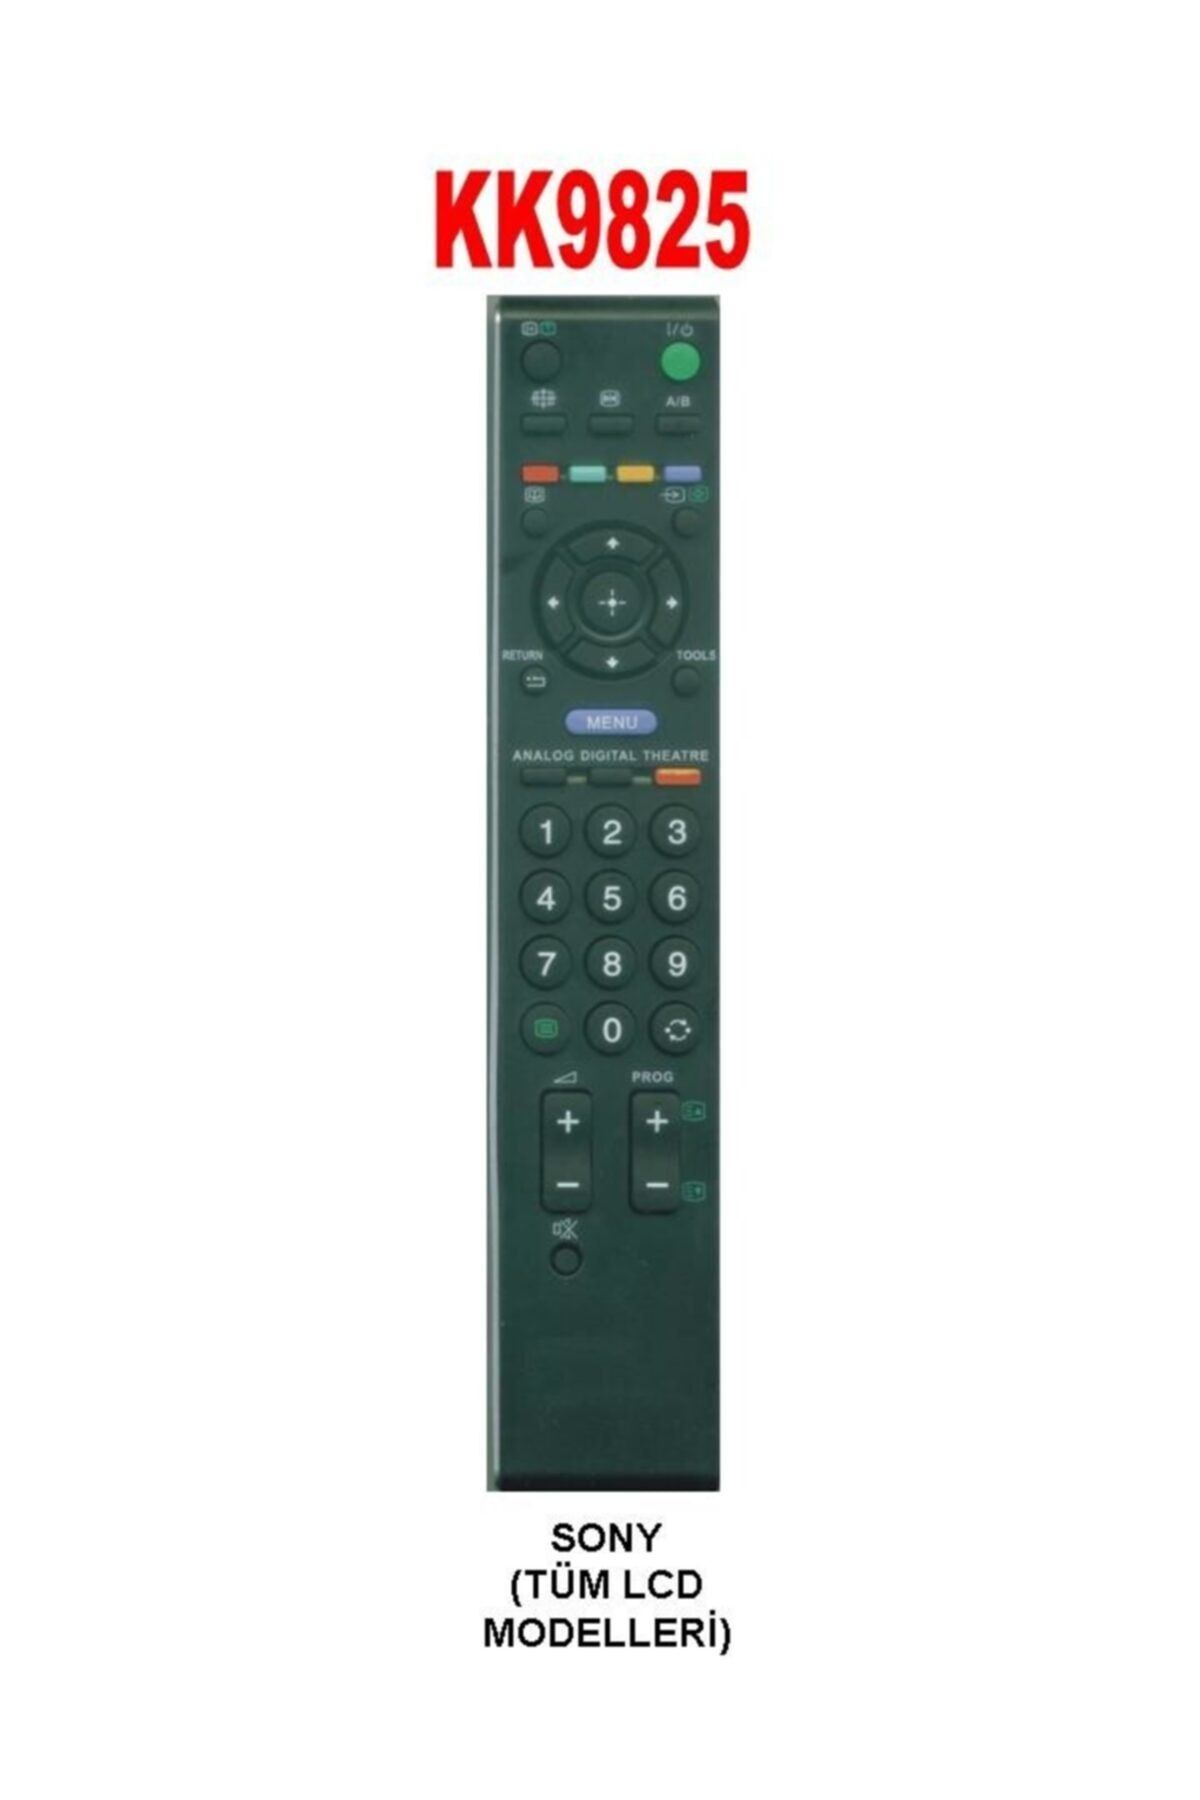 Sony Rm-715a Lcd Led Tv Kumandası Kk9825-974